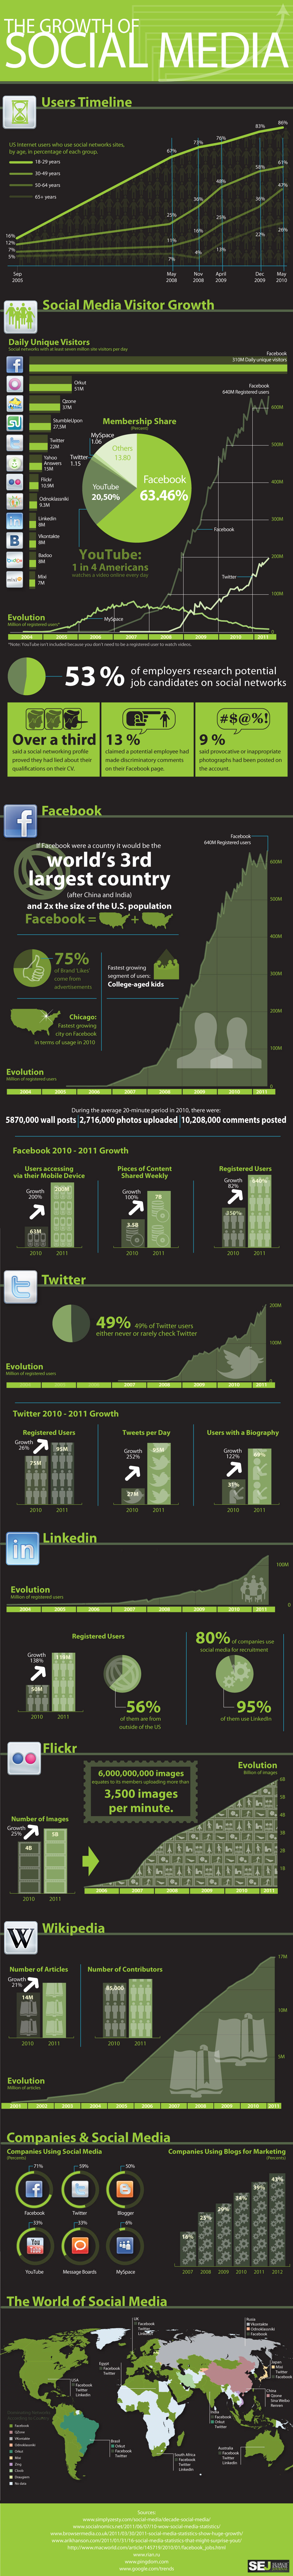 social media HR trends